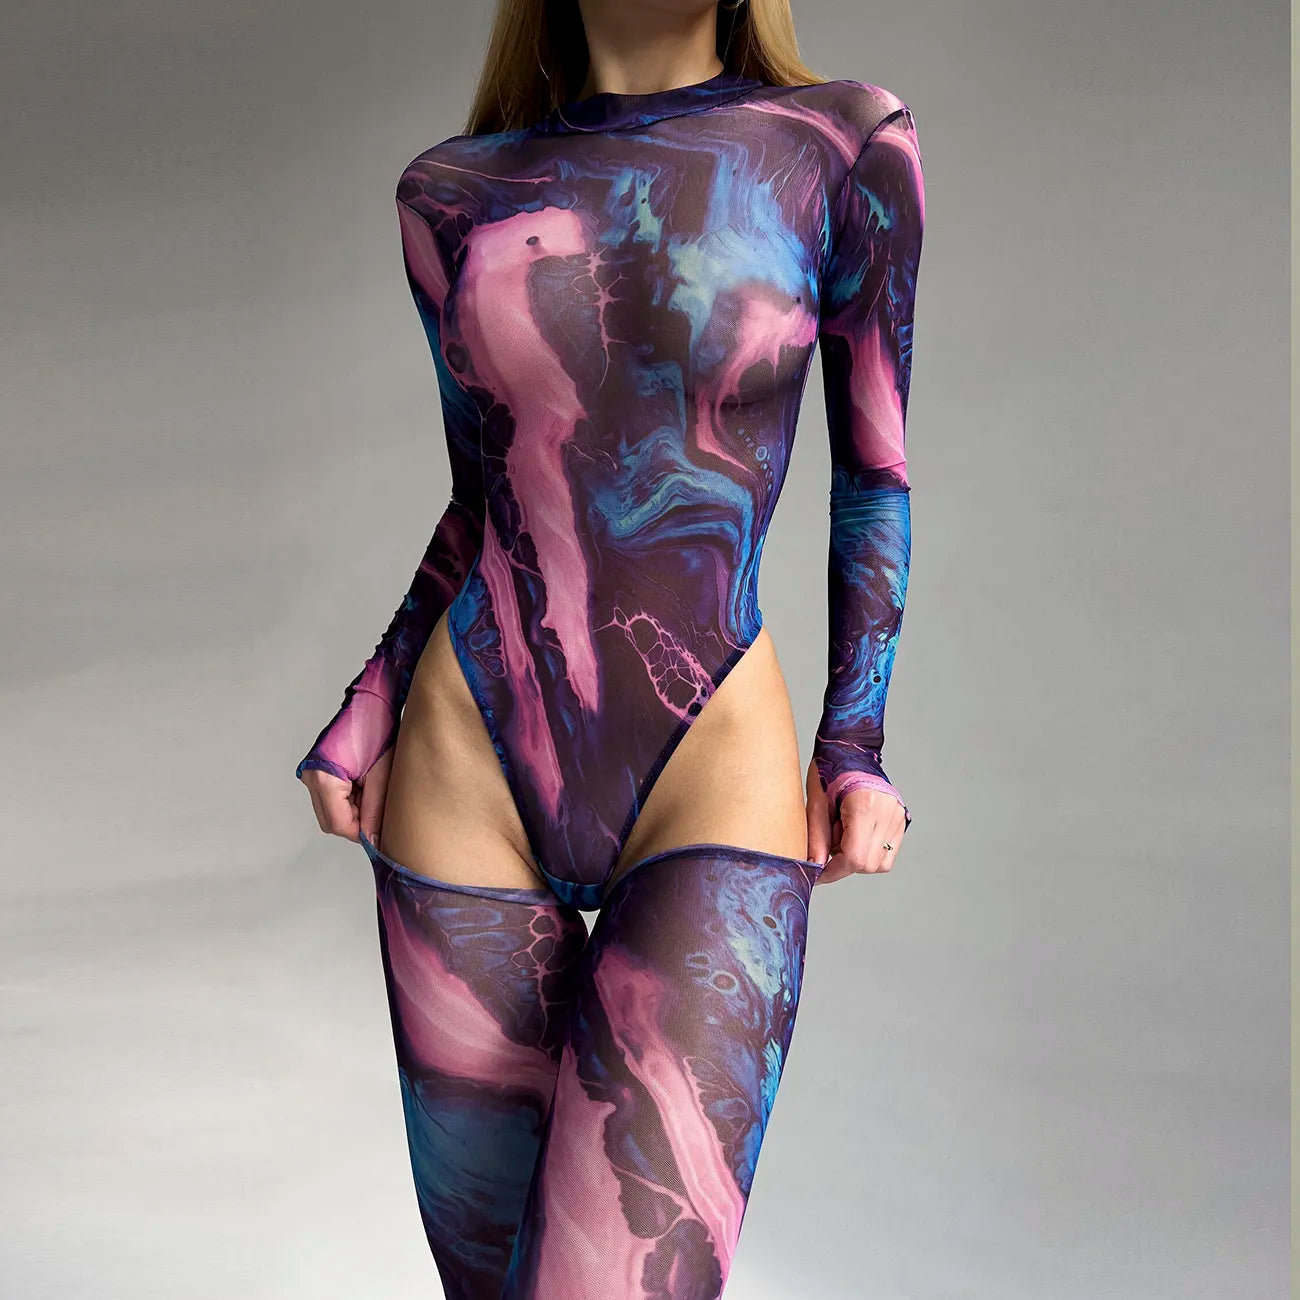 Body teñido anudado para mujer, lencería de manga larga, cuerpo ajustado sin censura, Tops sexys de malla sin entrepierna, conjunto con transparencias